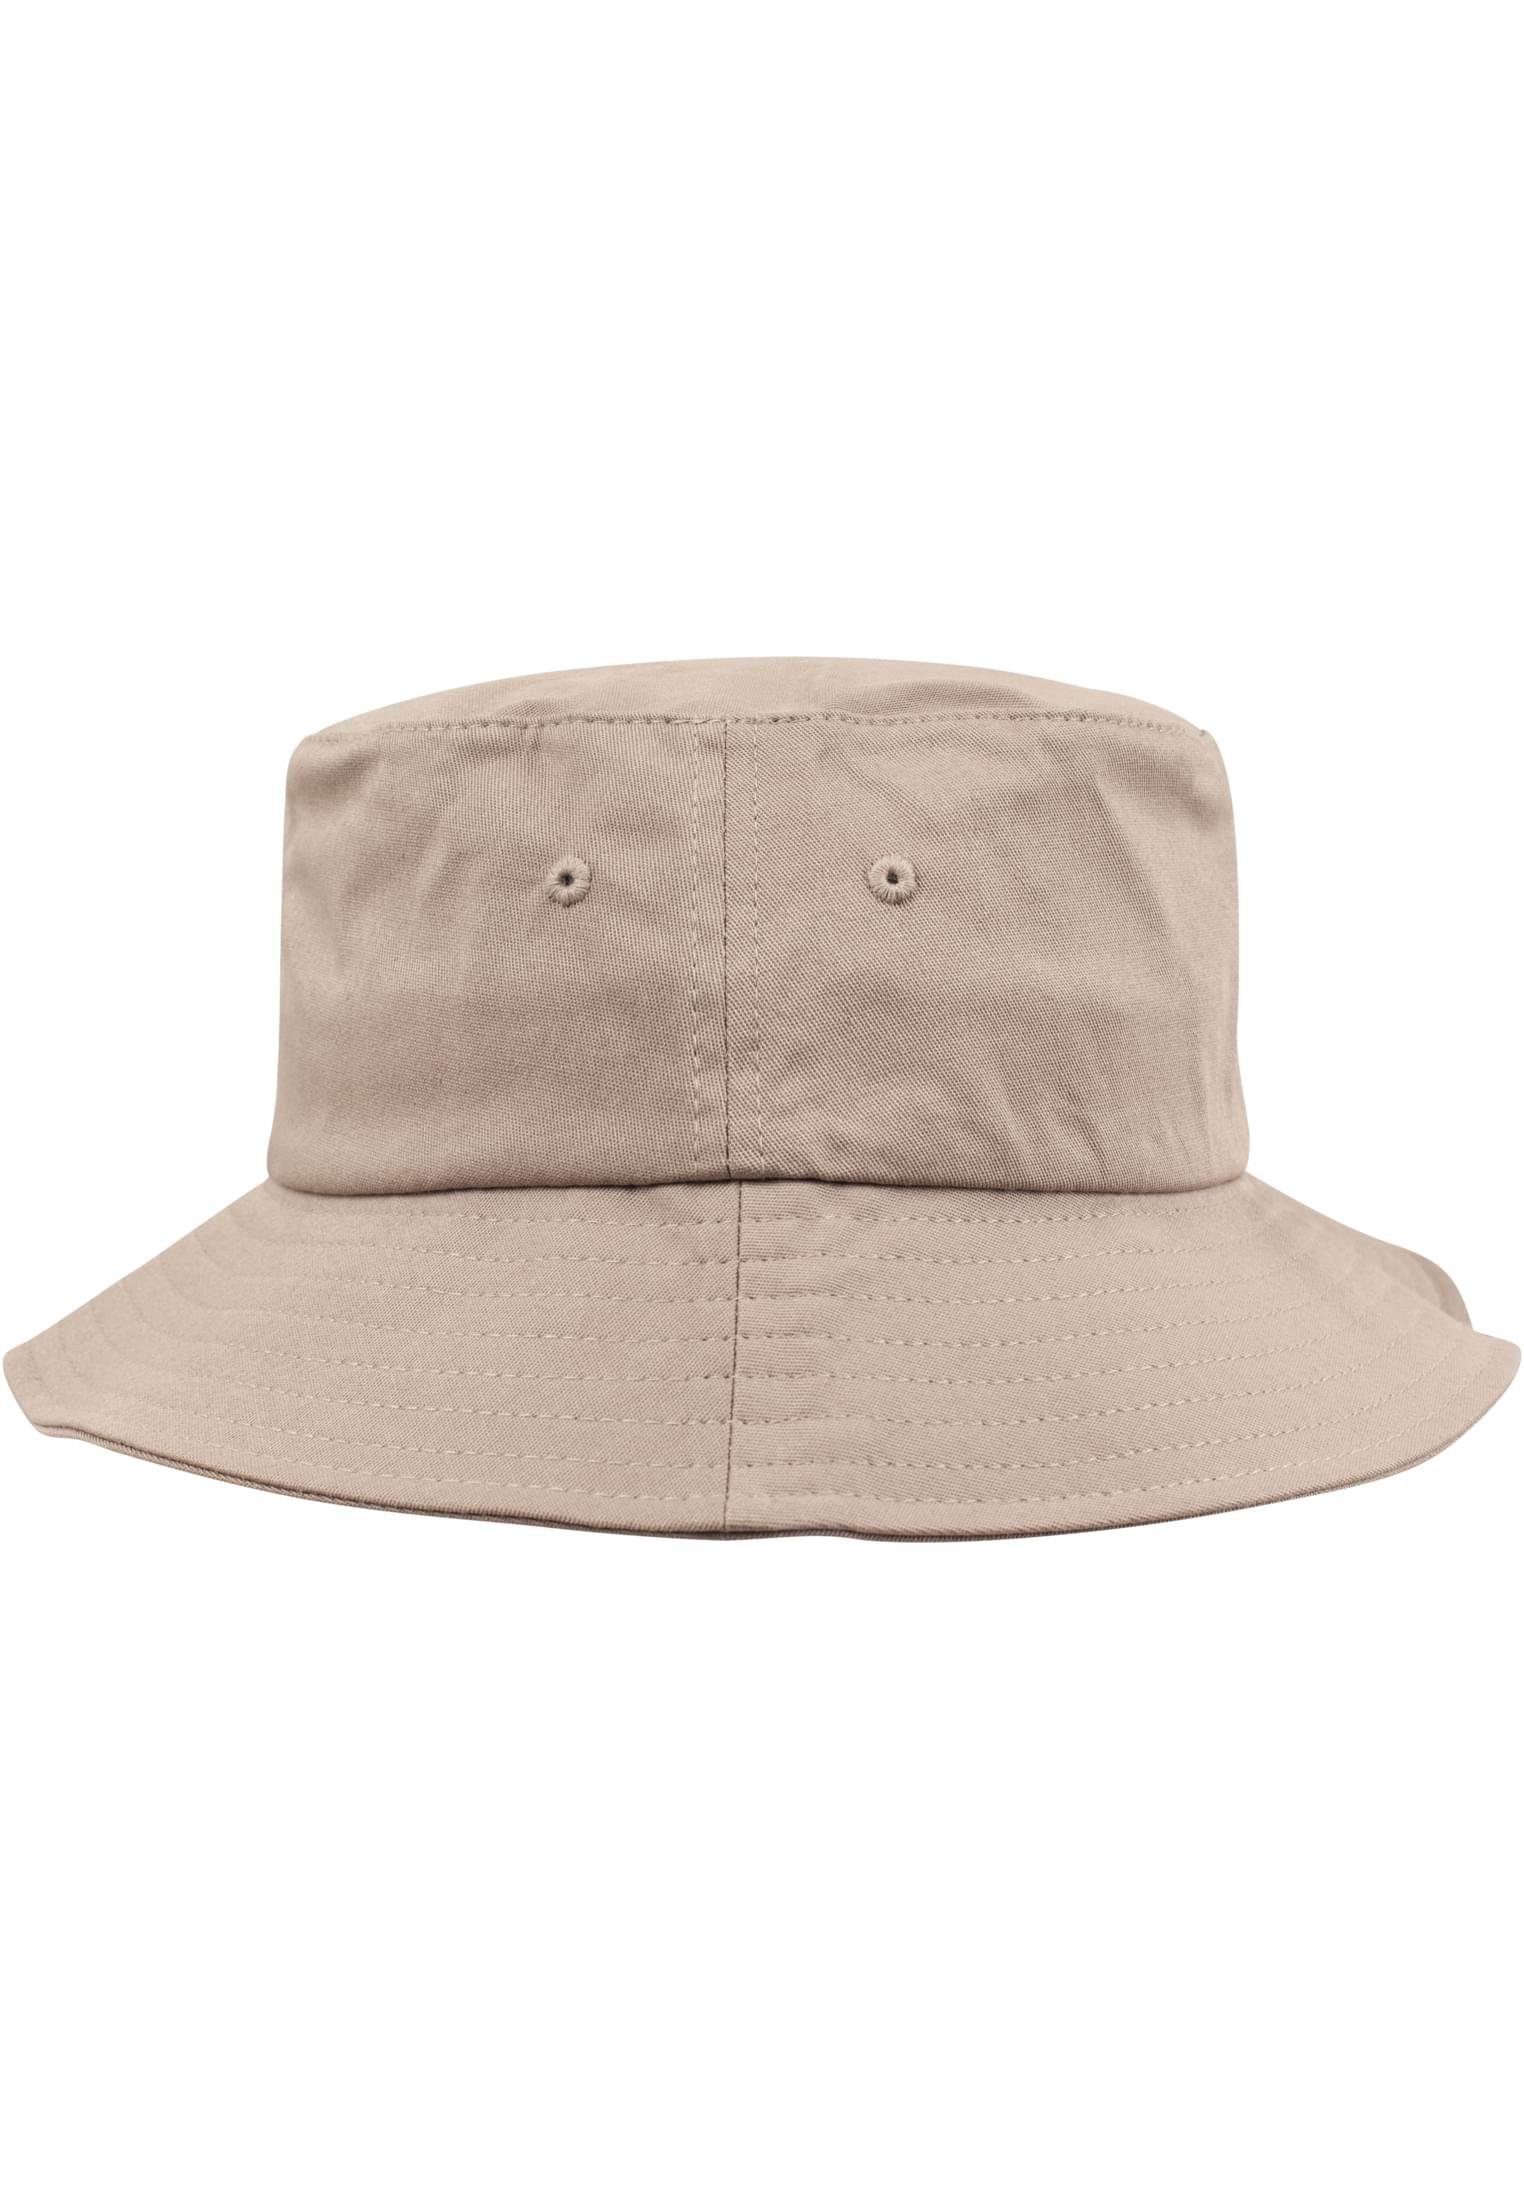 Cap khaki Hat Twill Flexfit Flexfit Cotton Flex Accessoires Bucket